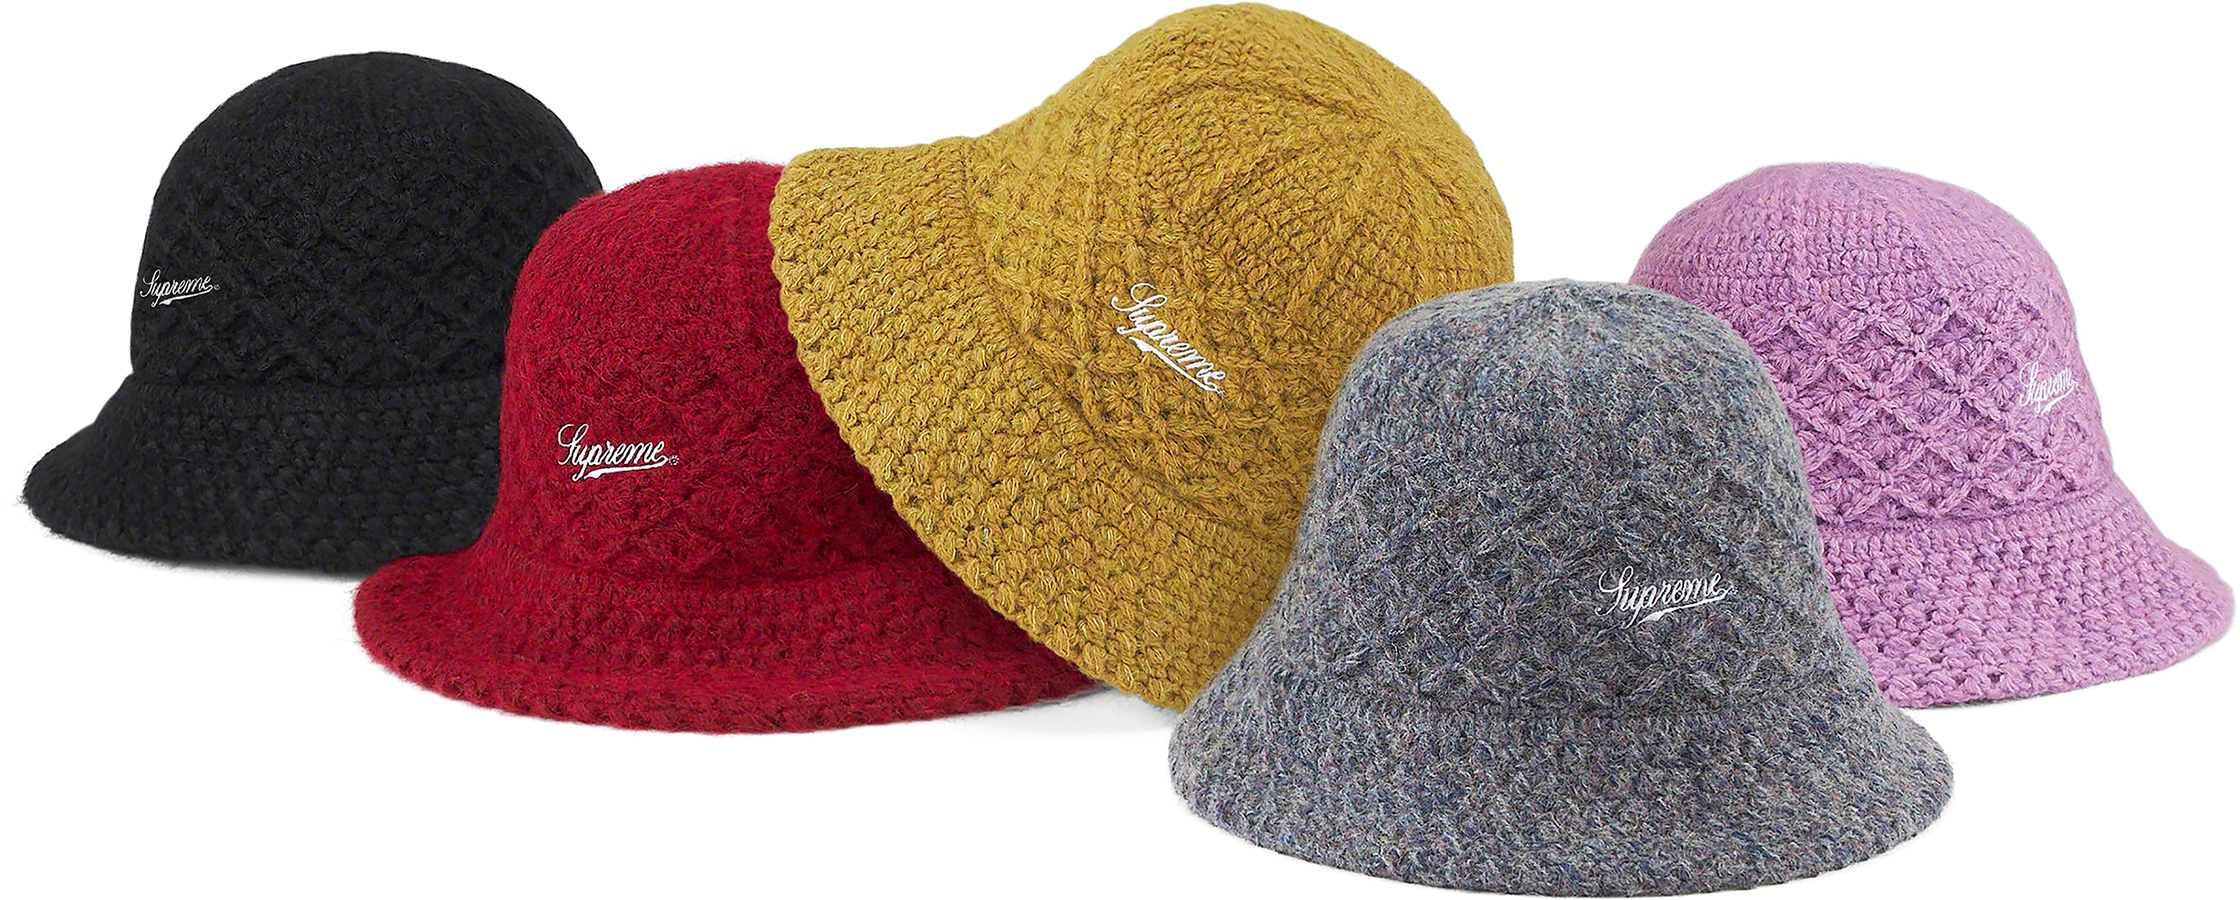 supreme 20AW crochet crusher hat | www.unimac.az